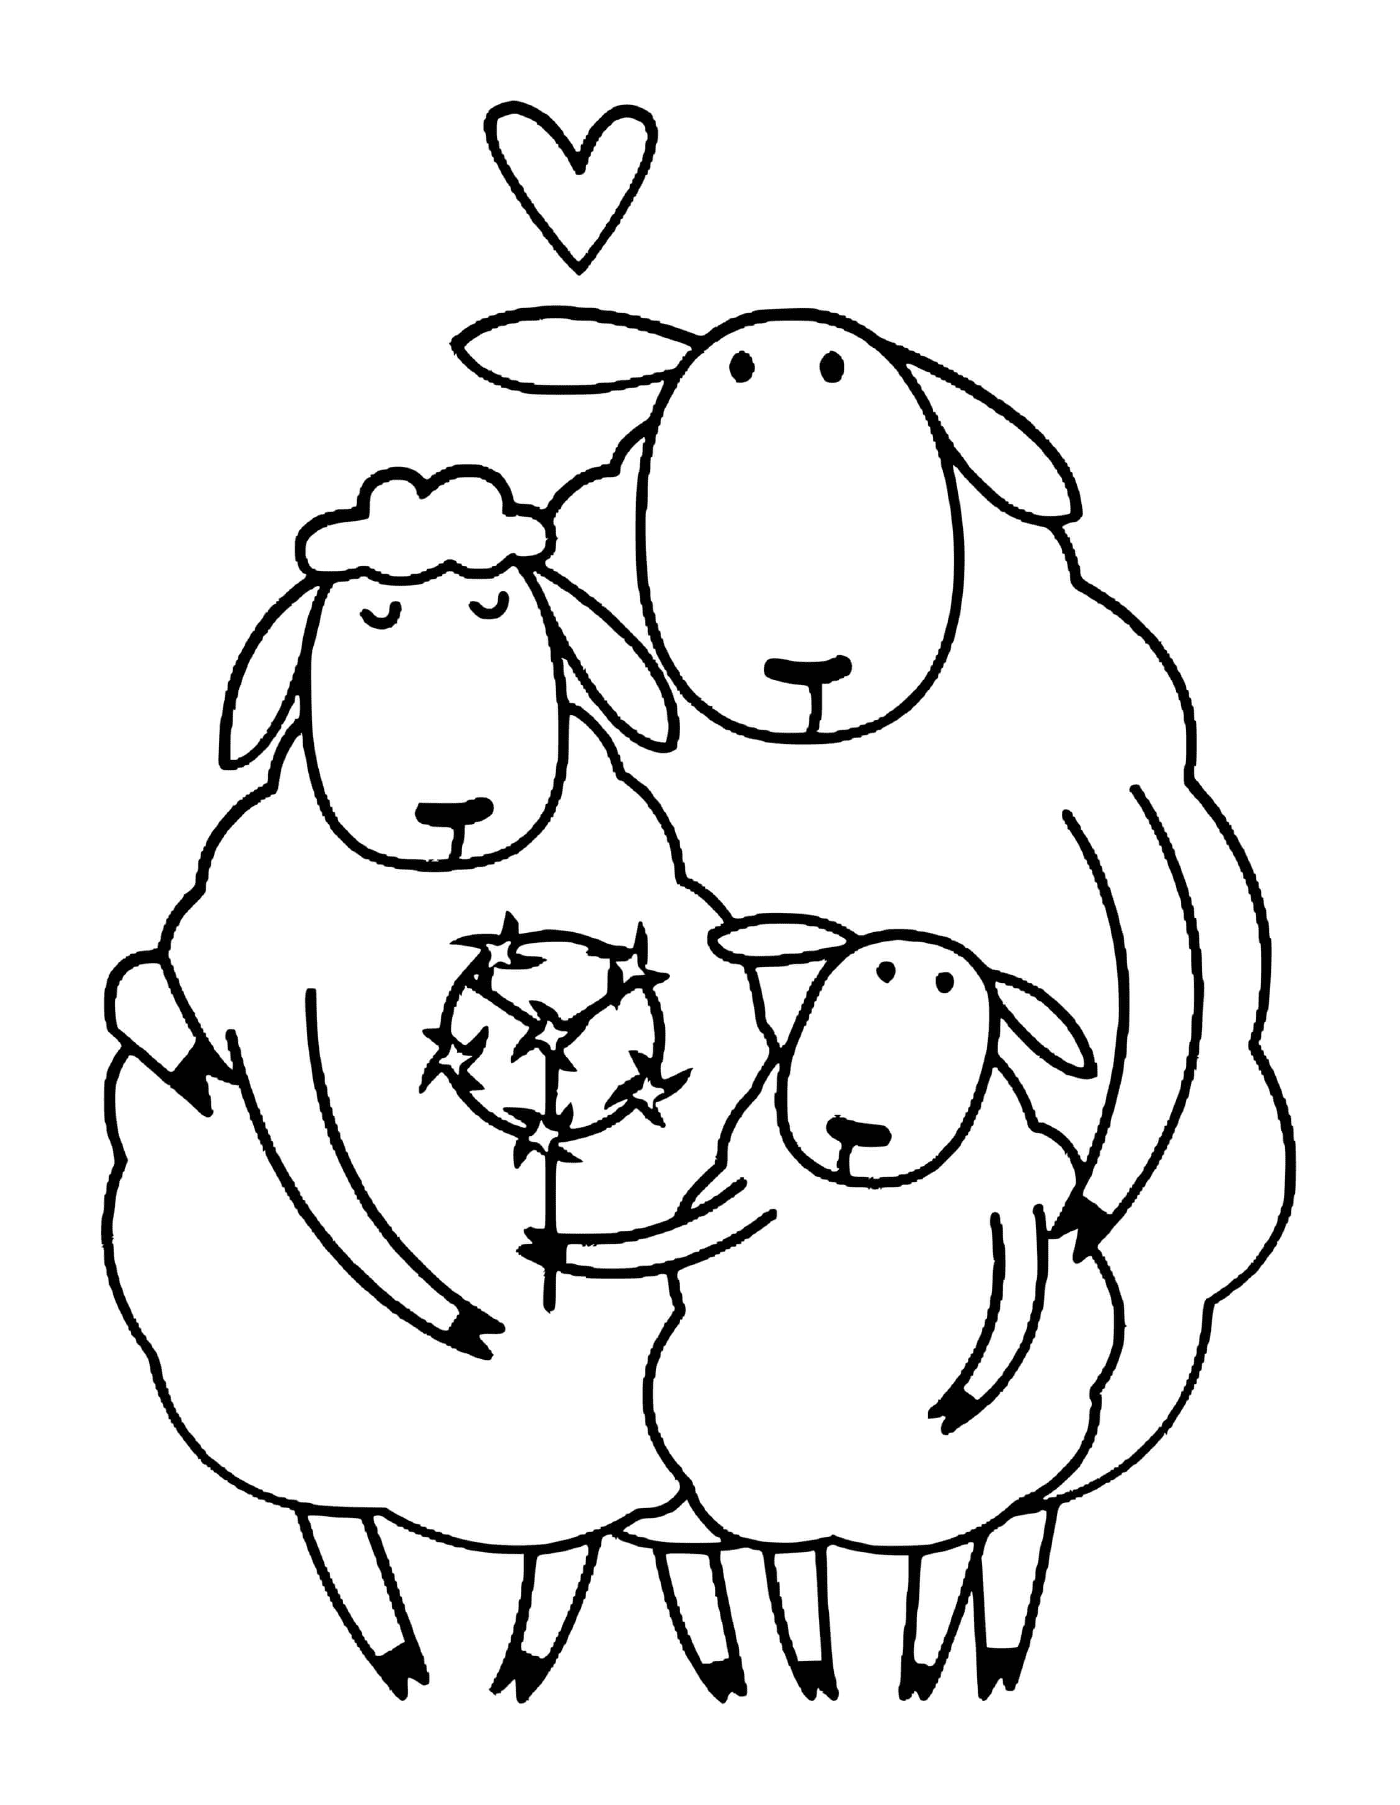  एक भेड़ और दो भेड़ के बच्चे 